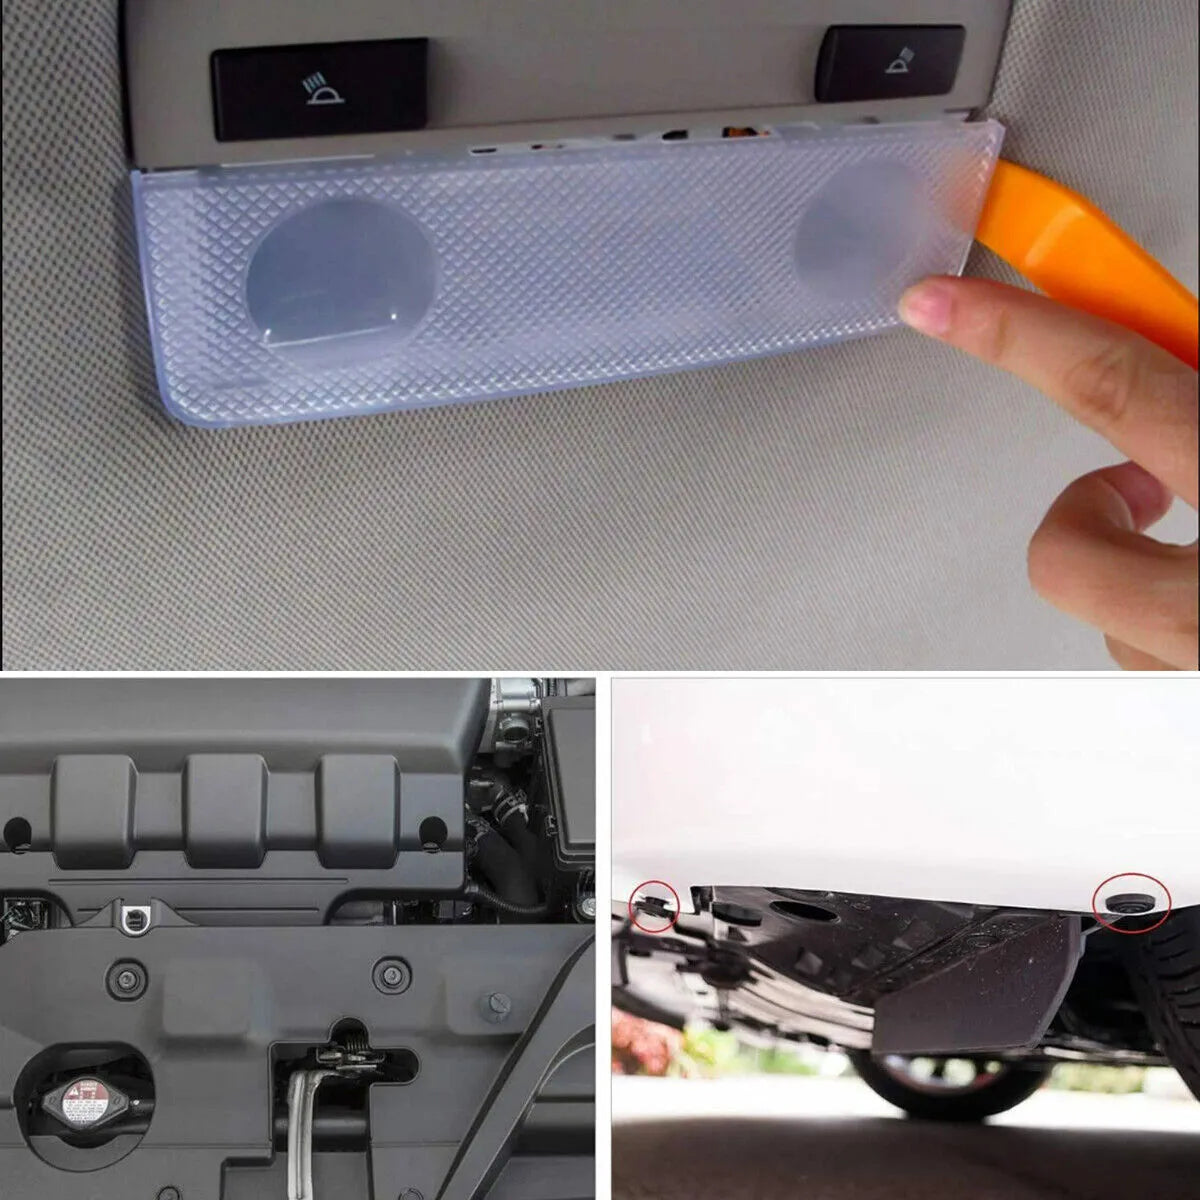 801Pcs/750Pcs/ 650Pcs Car Retainer Auto Fasteners Push Trim Plastic Clips Pin Rivet Bumper Kit